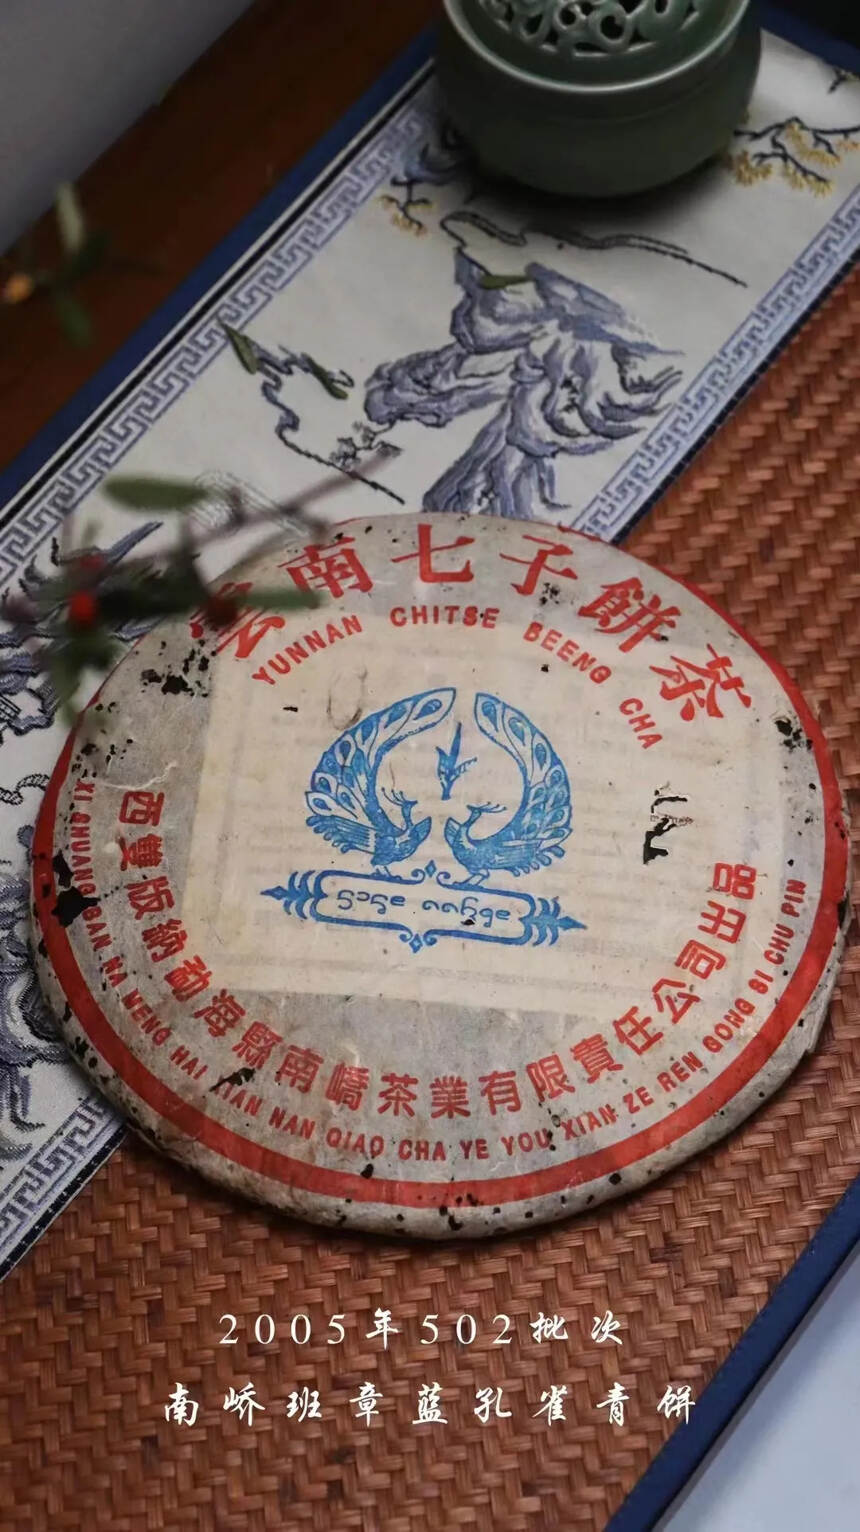 2005年•南峤茶厂• 班章蓝孔雀青饼

大白菜的之